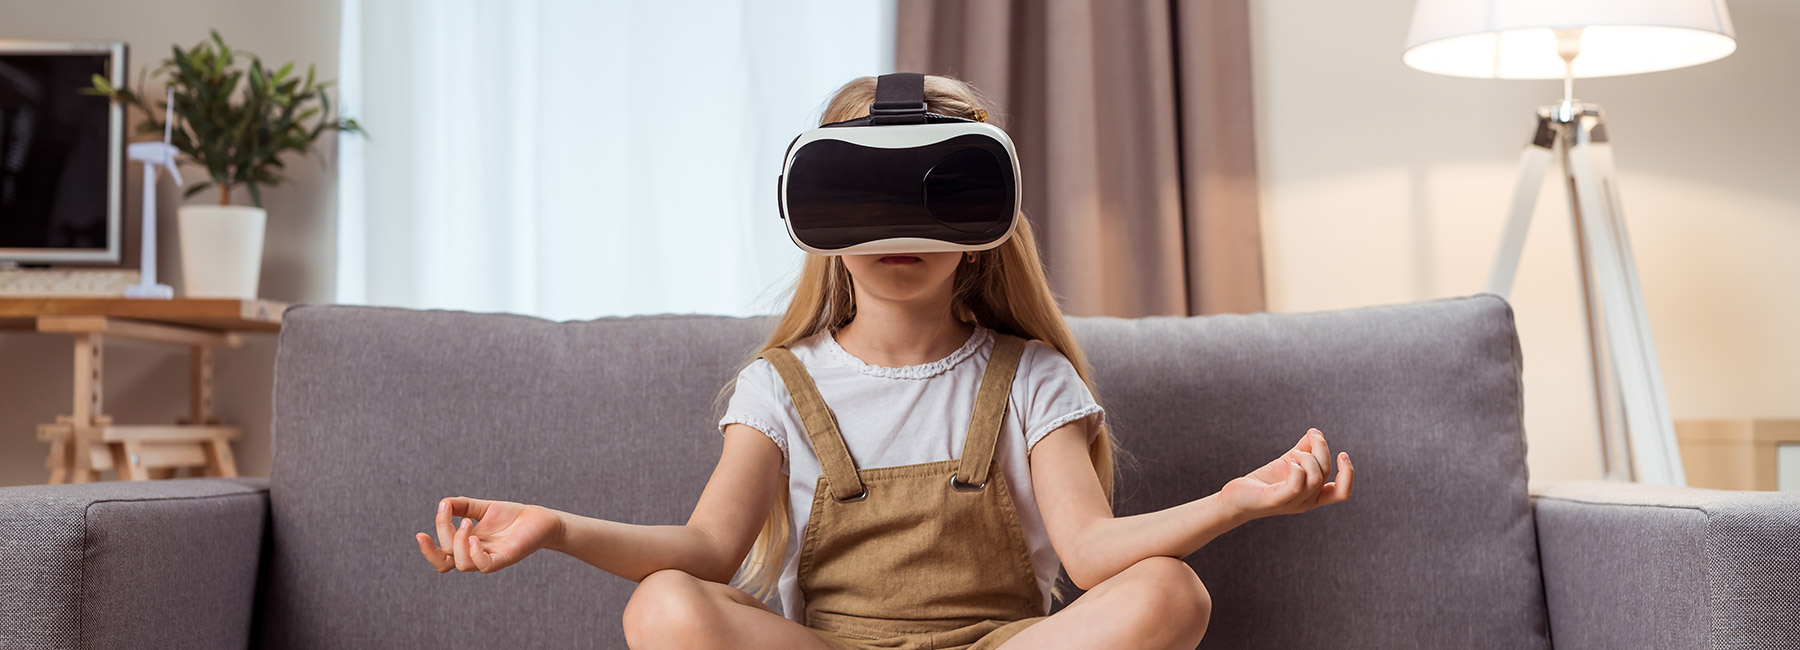 Une fille médite en portant un casque de réalité virtuelle